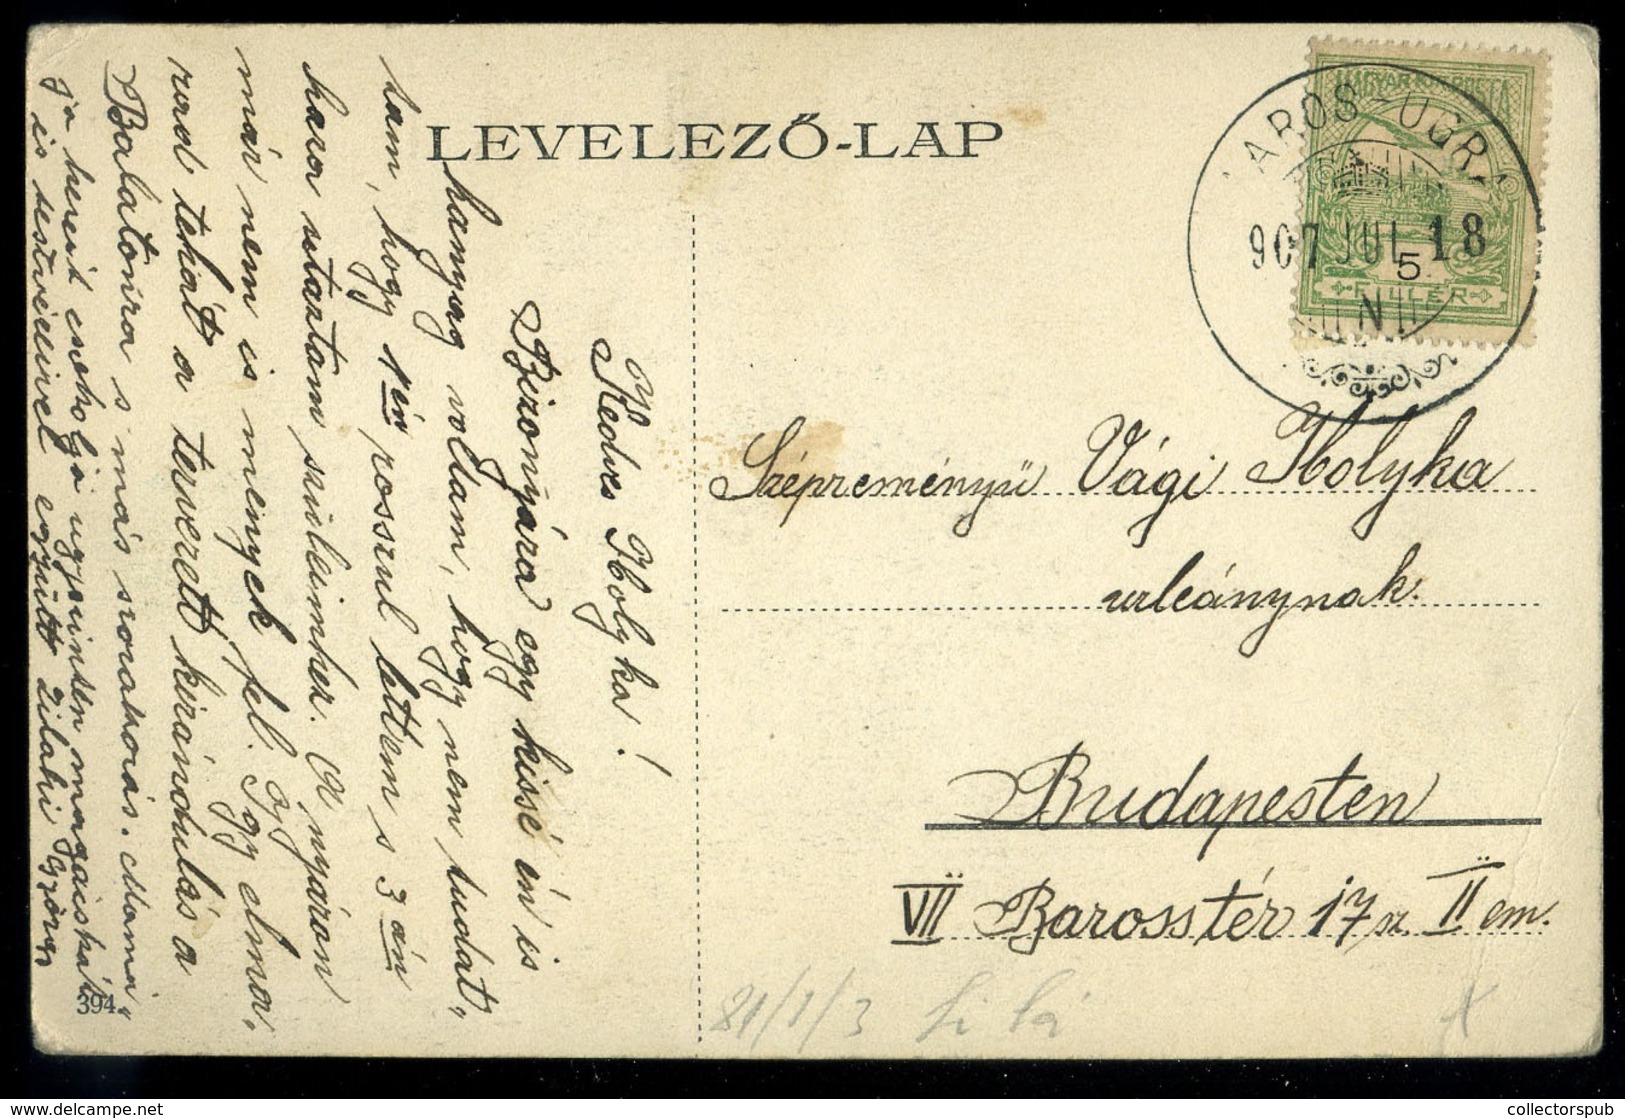 BUDAPEST 1907. Postatakarékpénztár épület Régi Képeslap - Hongarije